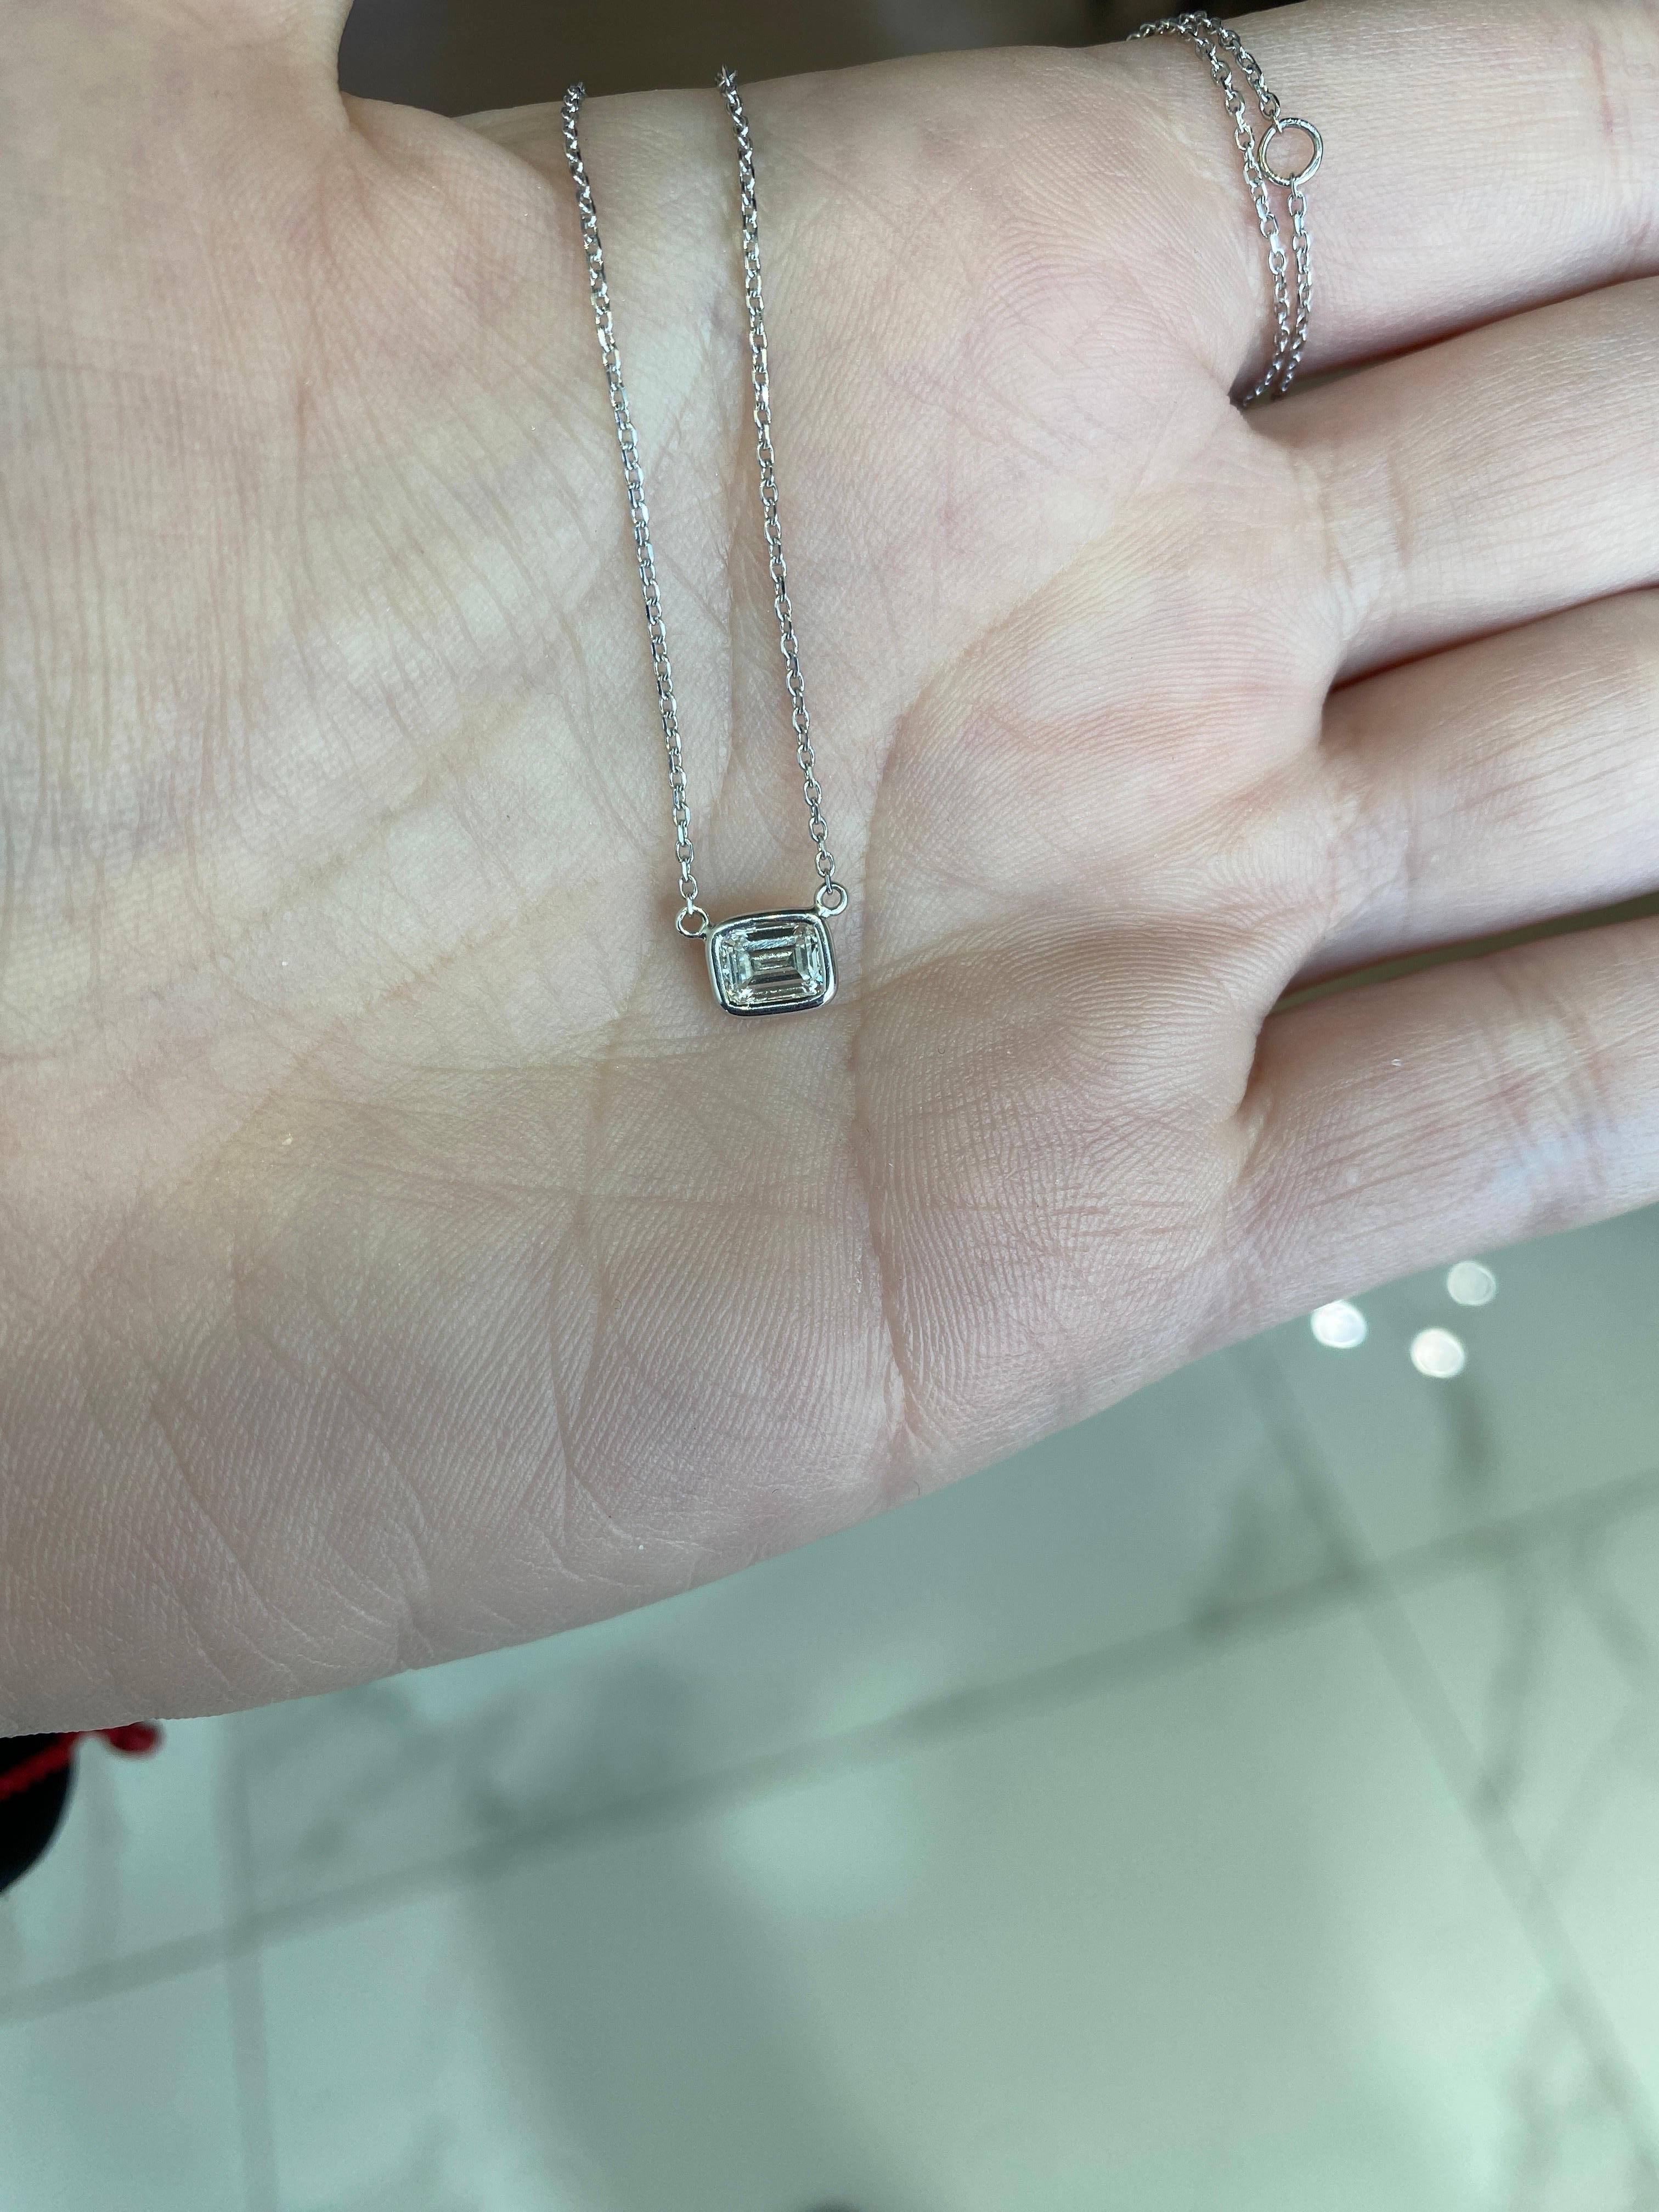 0.44 Carat Natural Emerald Cut Bezel Set Diamond Pendant Necklace 14k White Gold For Sale 5